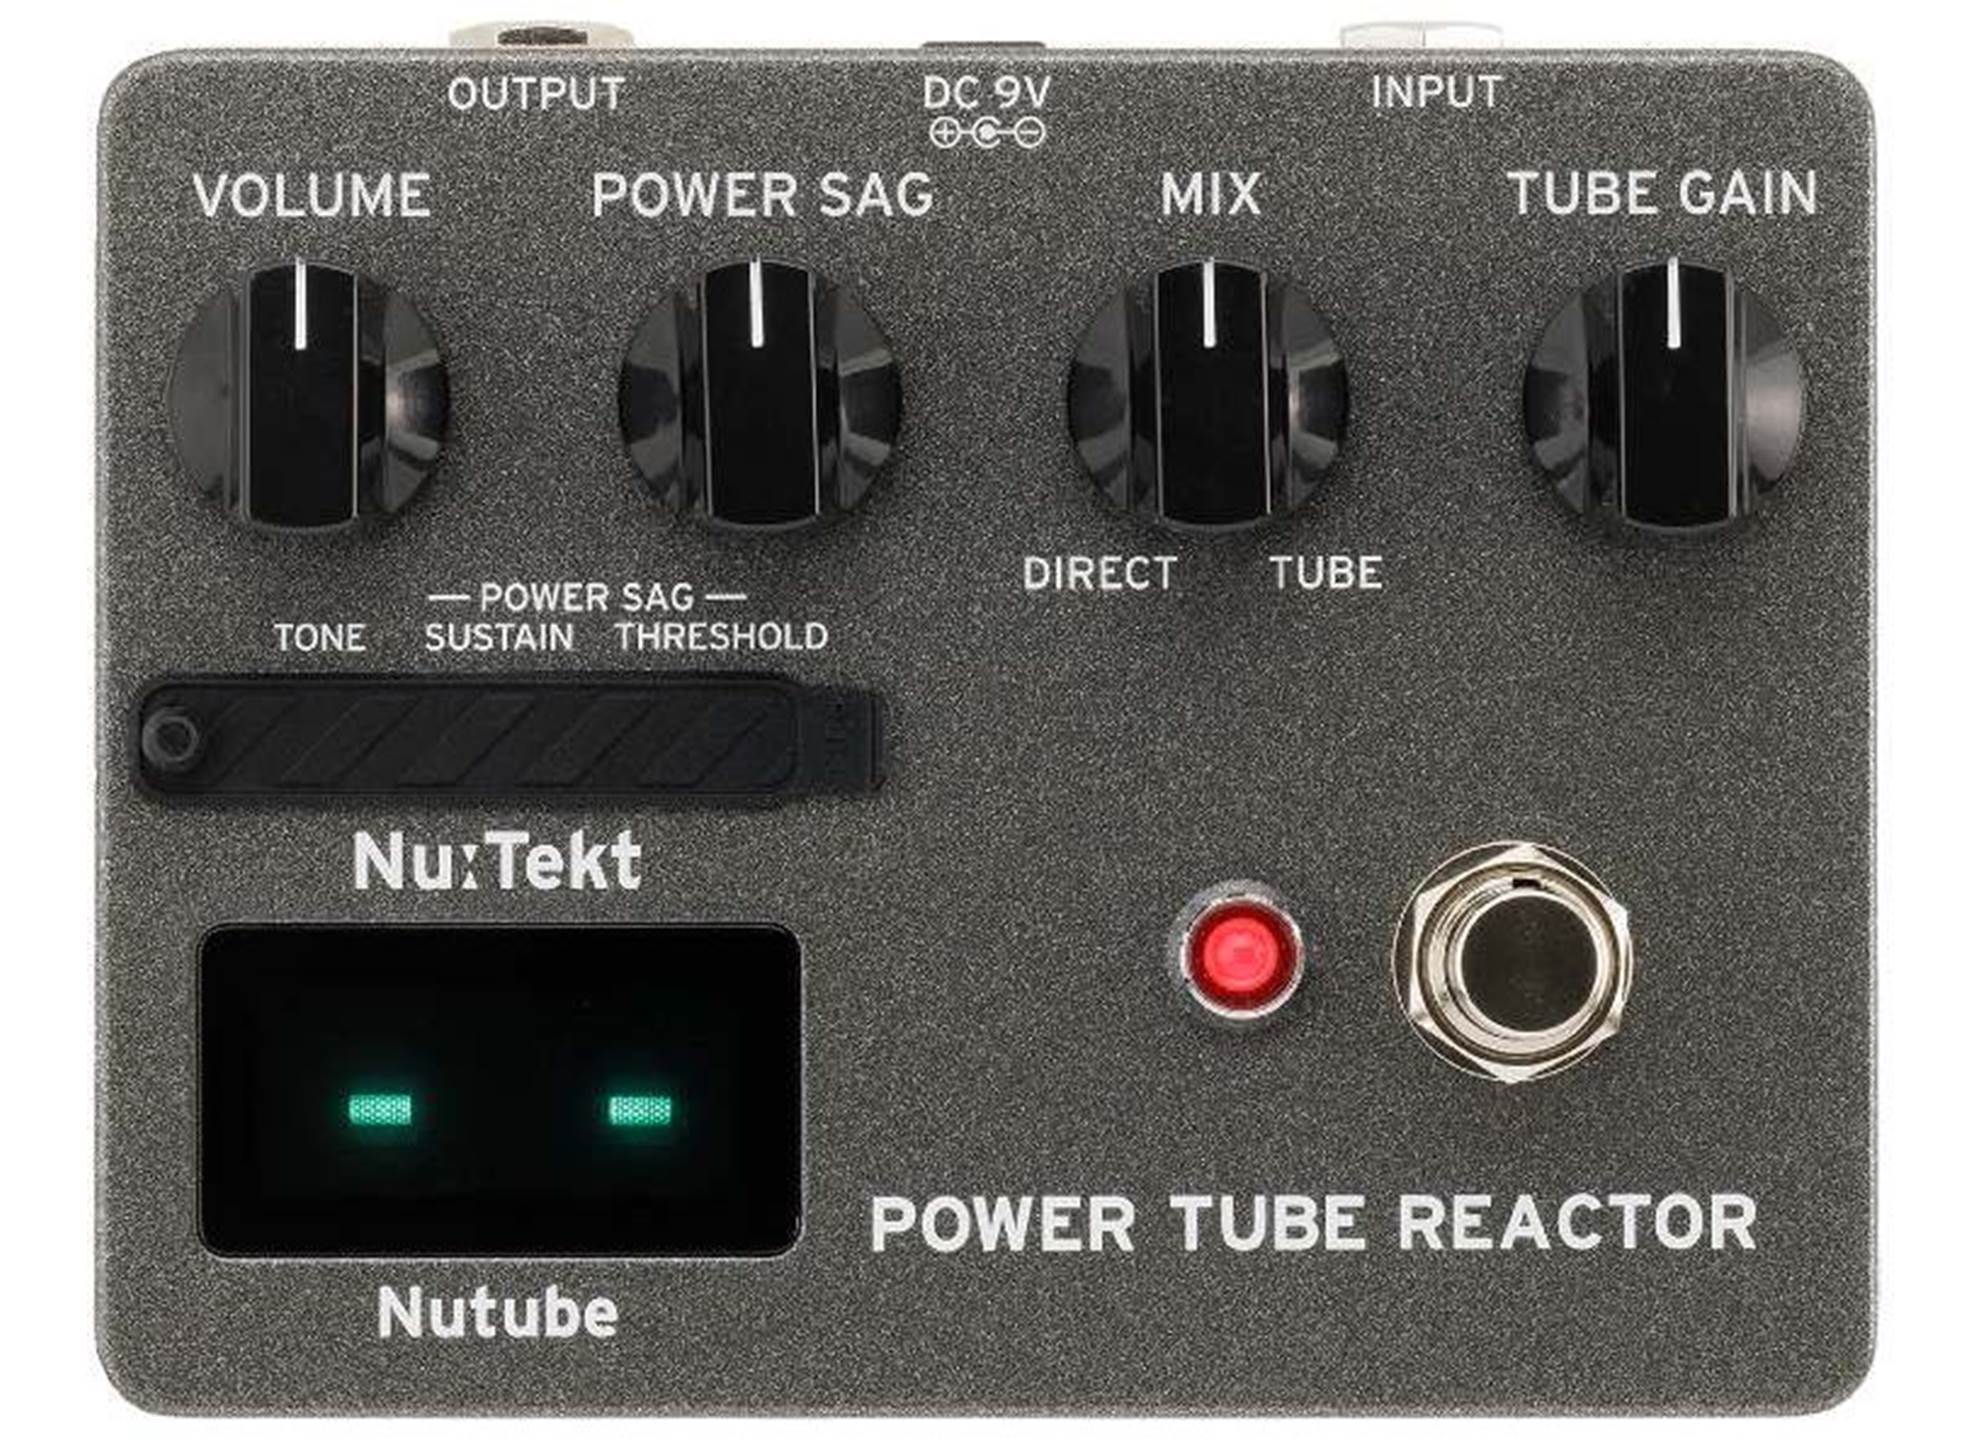 TR-S NuTekt Power Tube Reactor DIY Kit